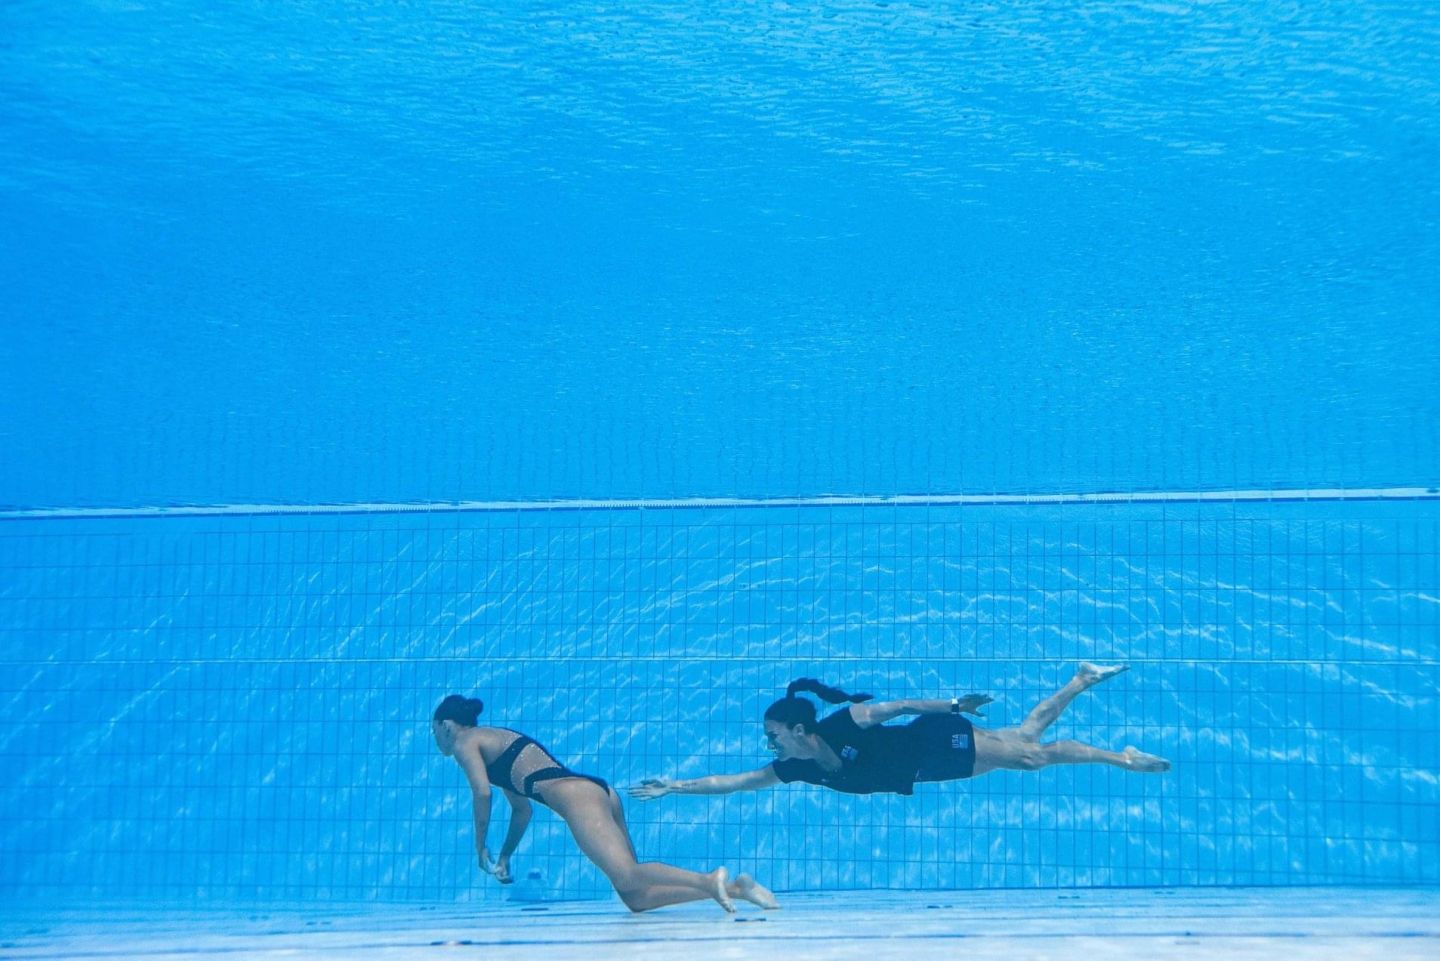 La nadadora artística, Anita Álvarez, se recupera luego de casi morir ahogada 